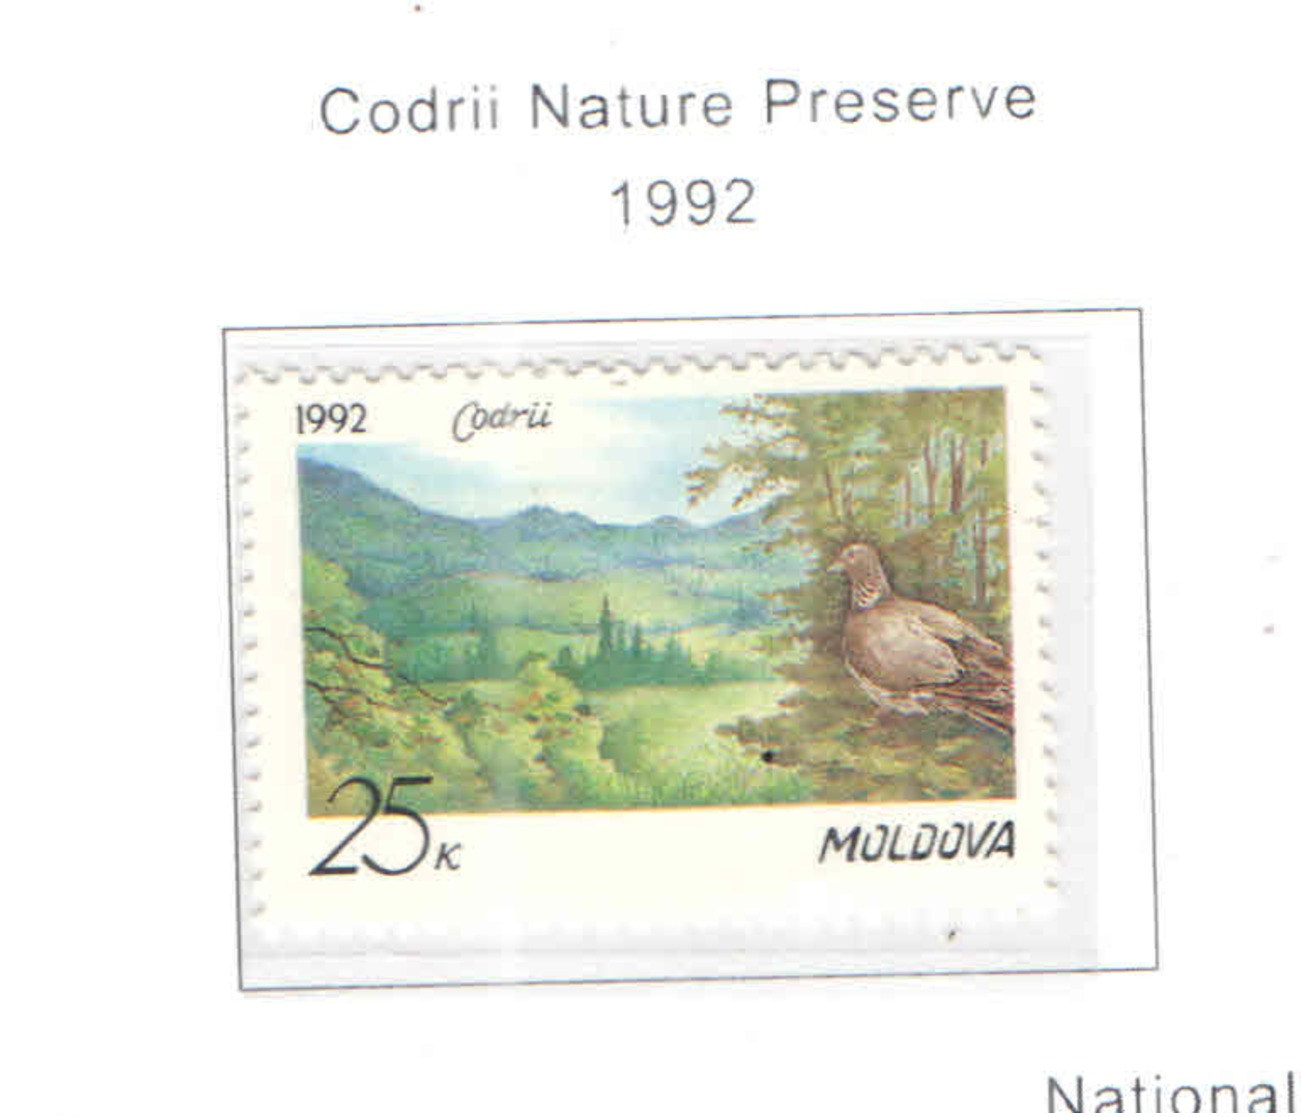 Moldavia PO 1992 Pres.Natura Codrii Scott. 25+ See Scan On Scott.Page - Moldavia